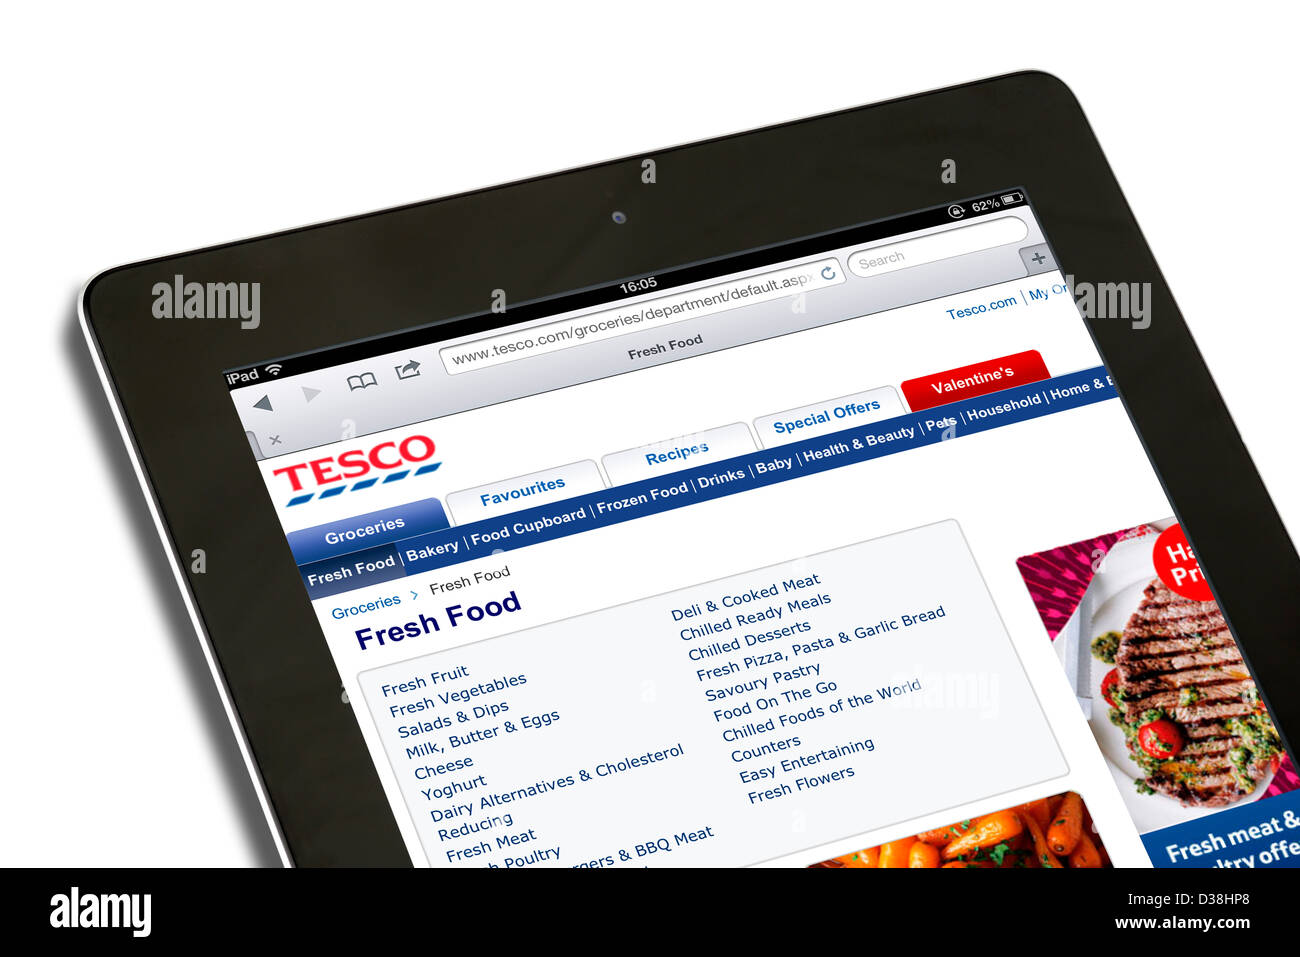 Il cibo lo shopping online sul sito web di Tesco con una quarta generazione di Apple iPad Foto Stock